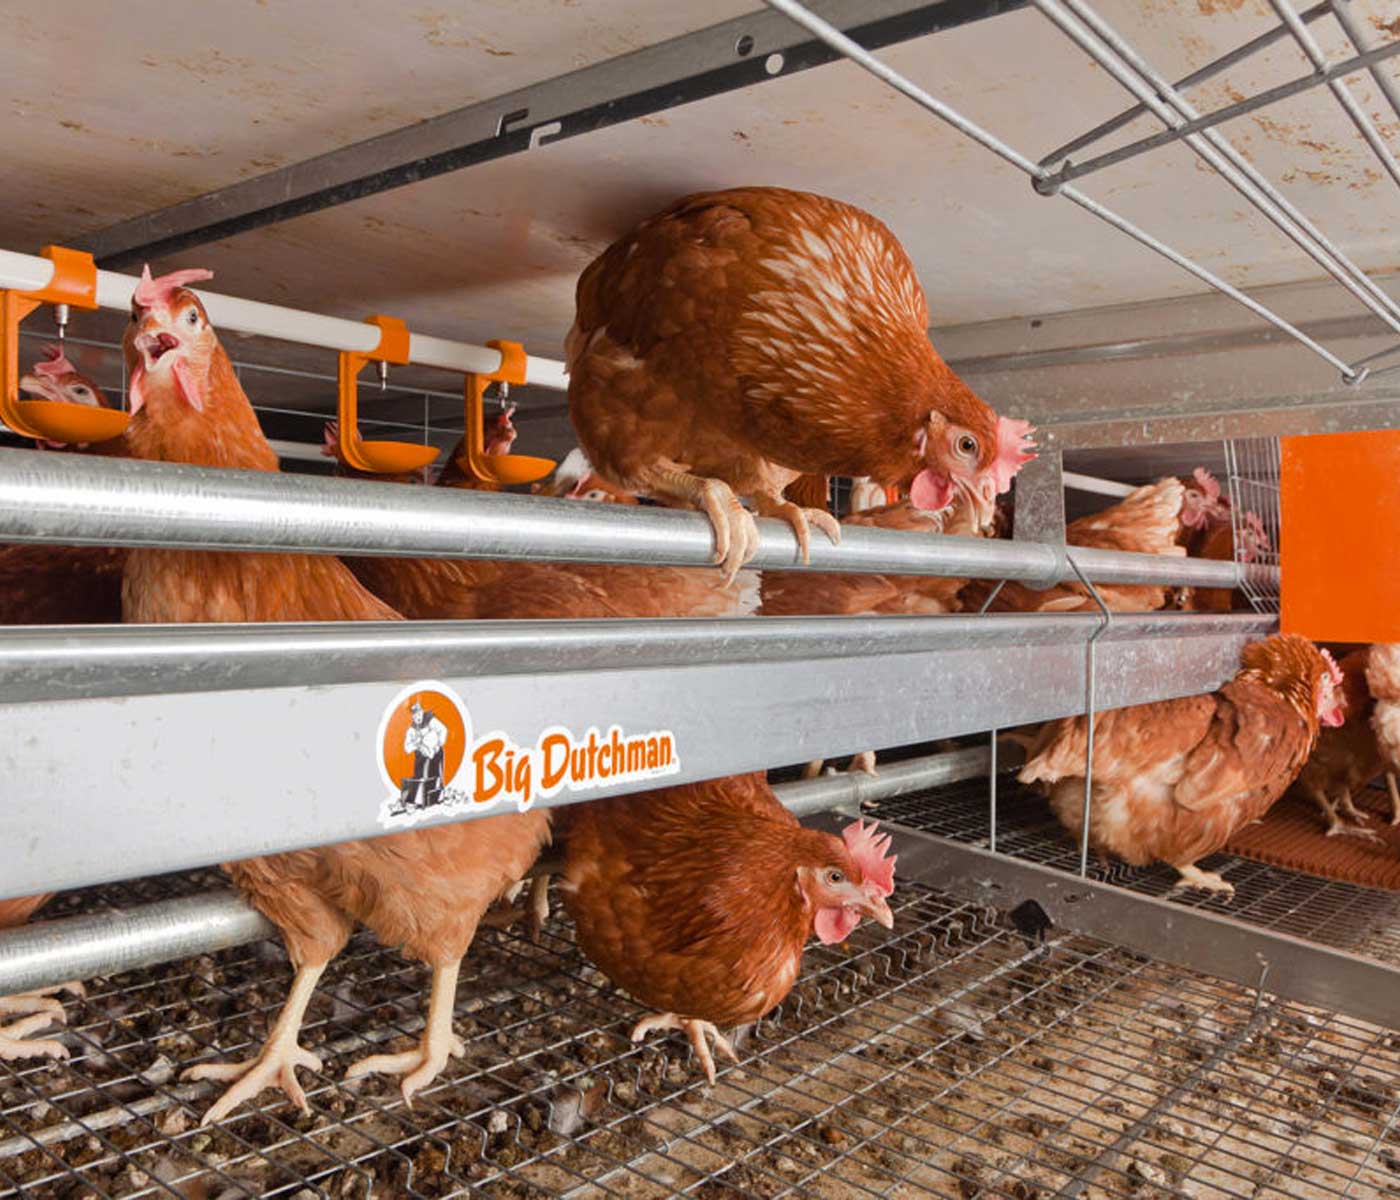 Avícola Tratante amplía sus instalaciones para la producción de huevo tipo 2 junto a una empresa de referencia como es Big Dutchman